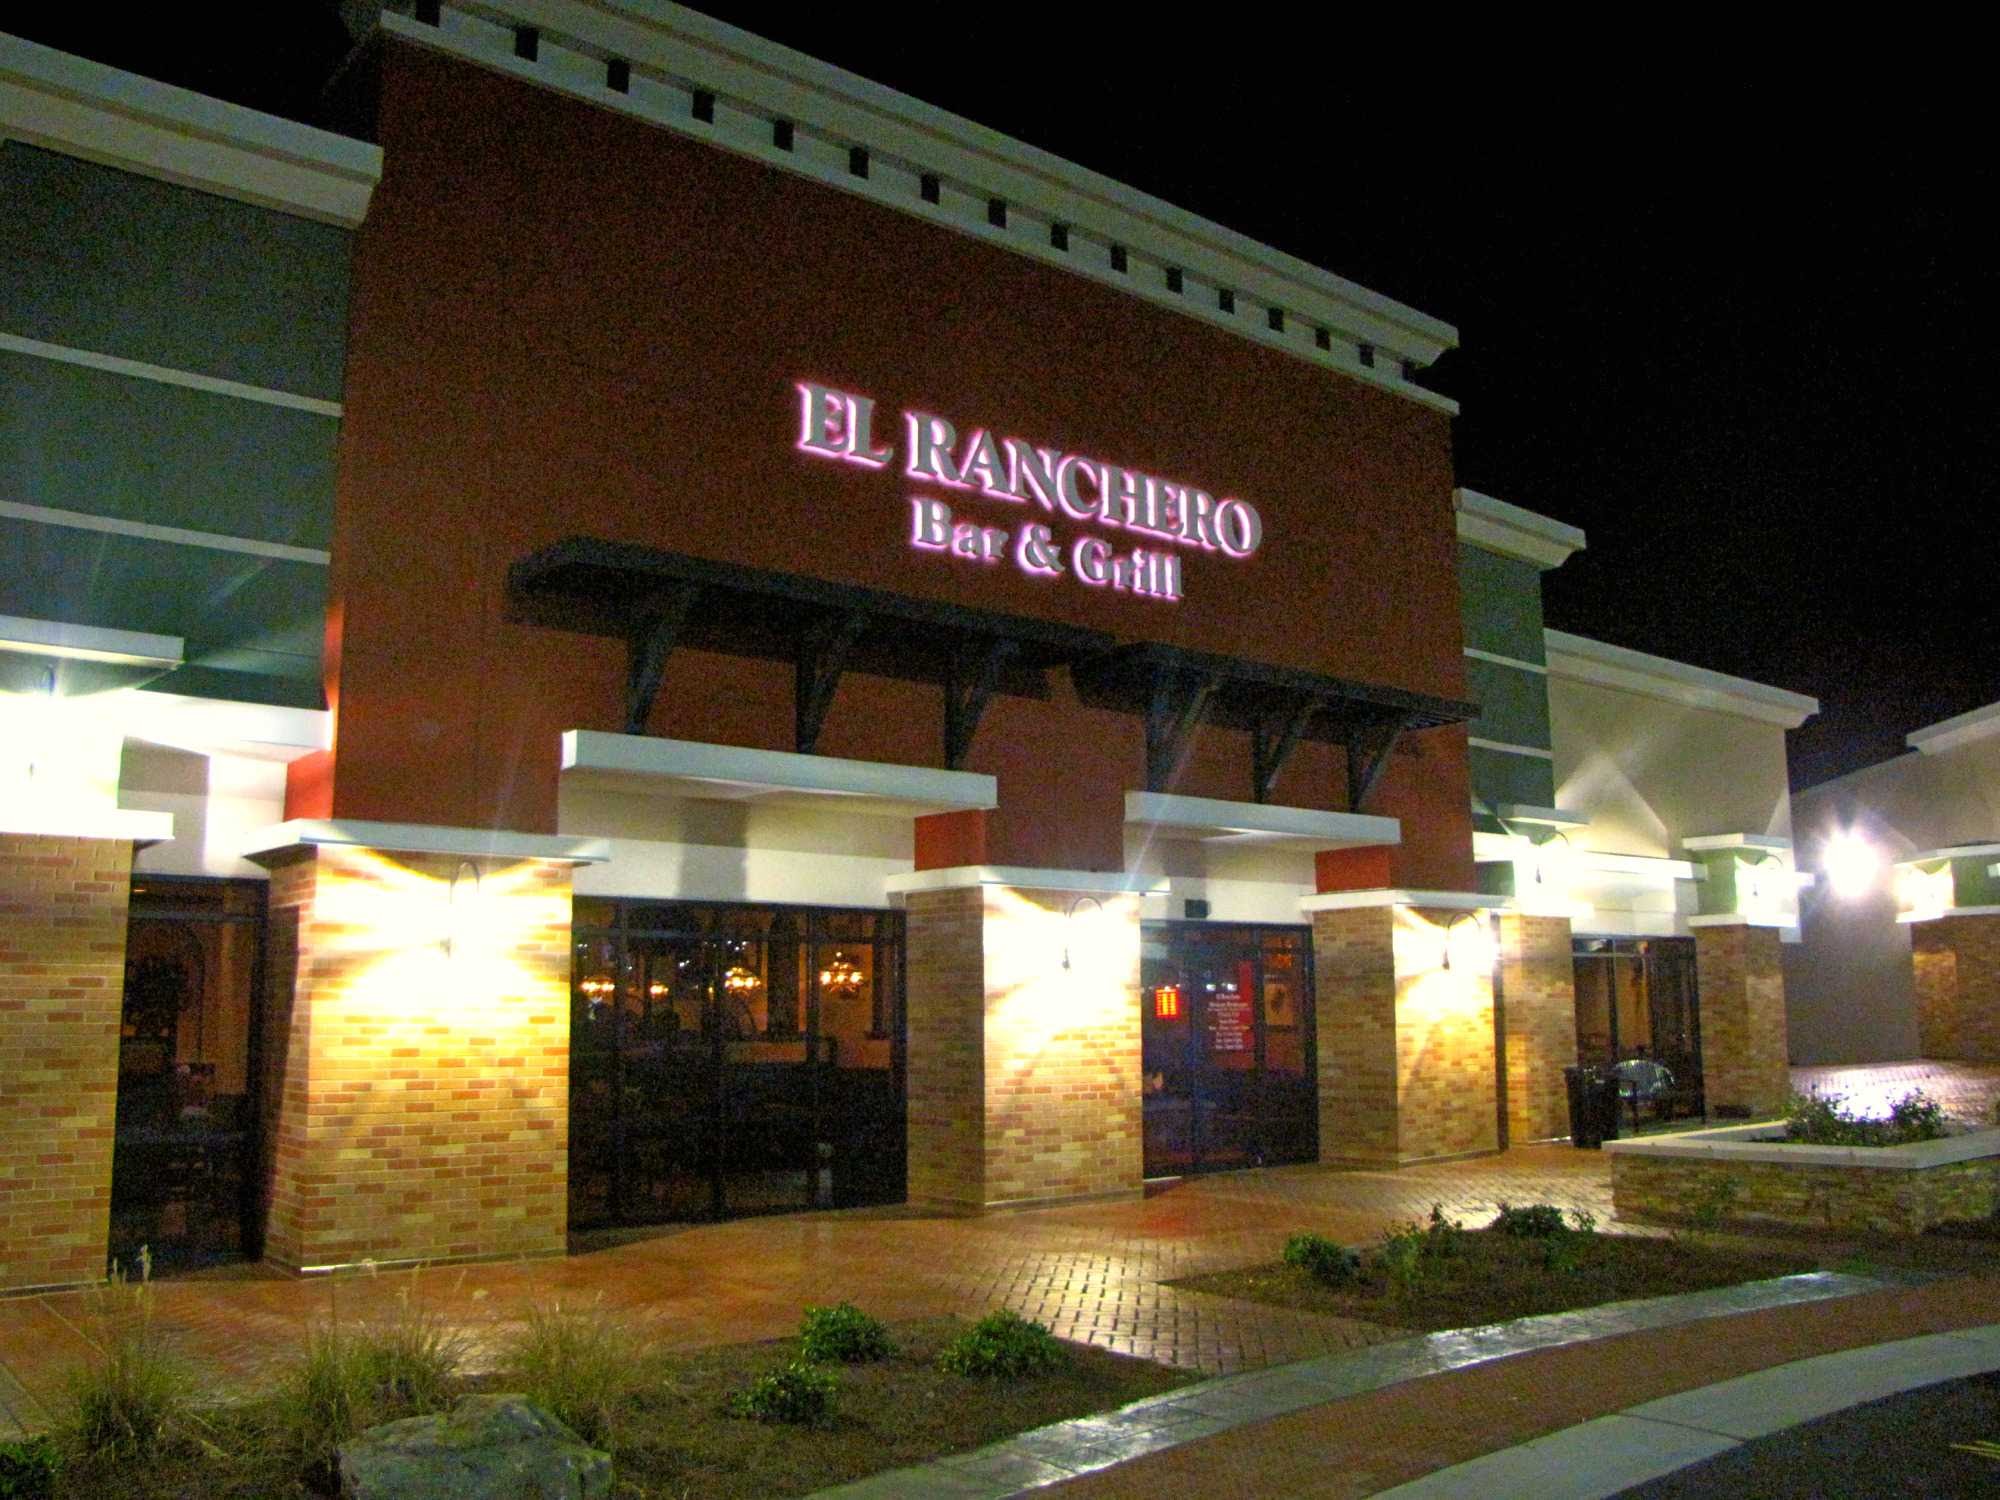 El Ranchero 7 Bar & Grill